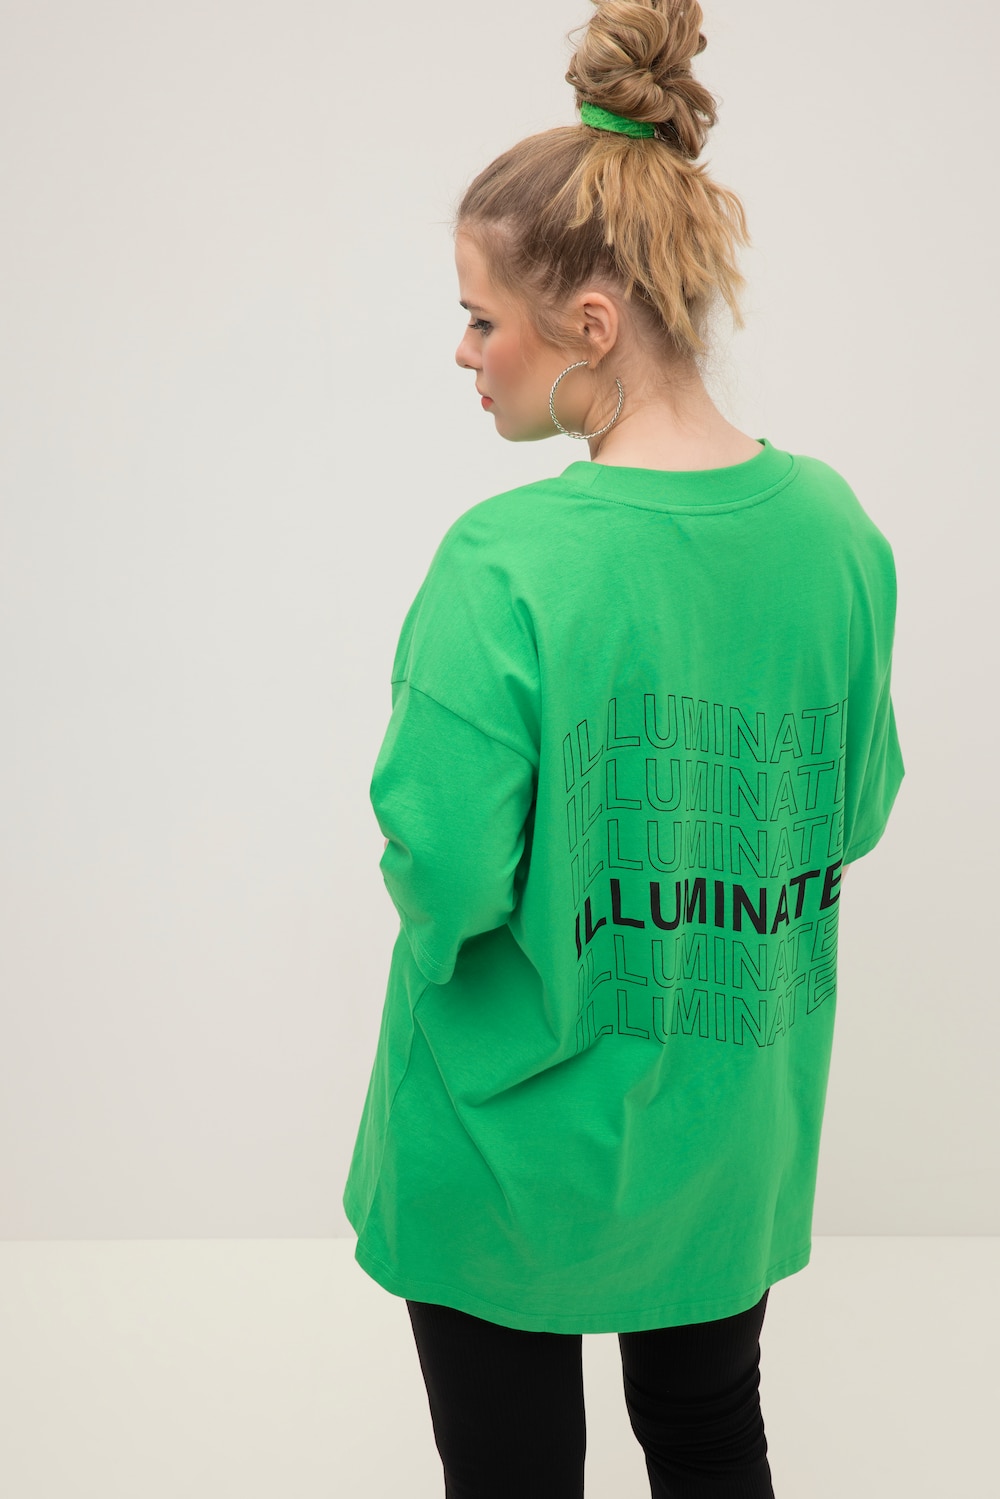 Grote Maten T-shirt, Dames, groen, Maat: 46/48, Katoen, Studio Untold